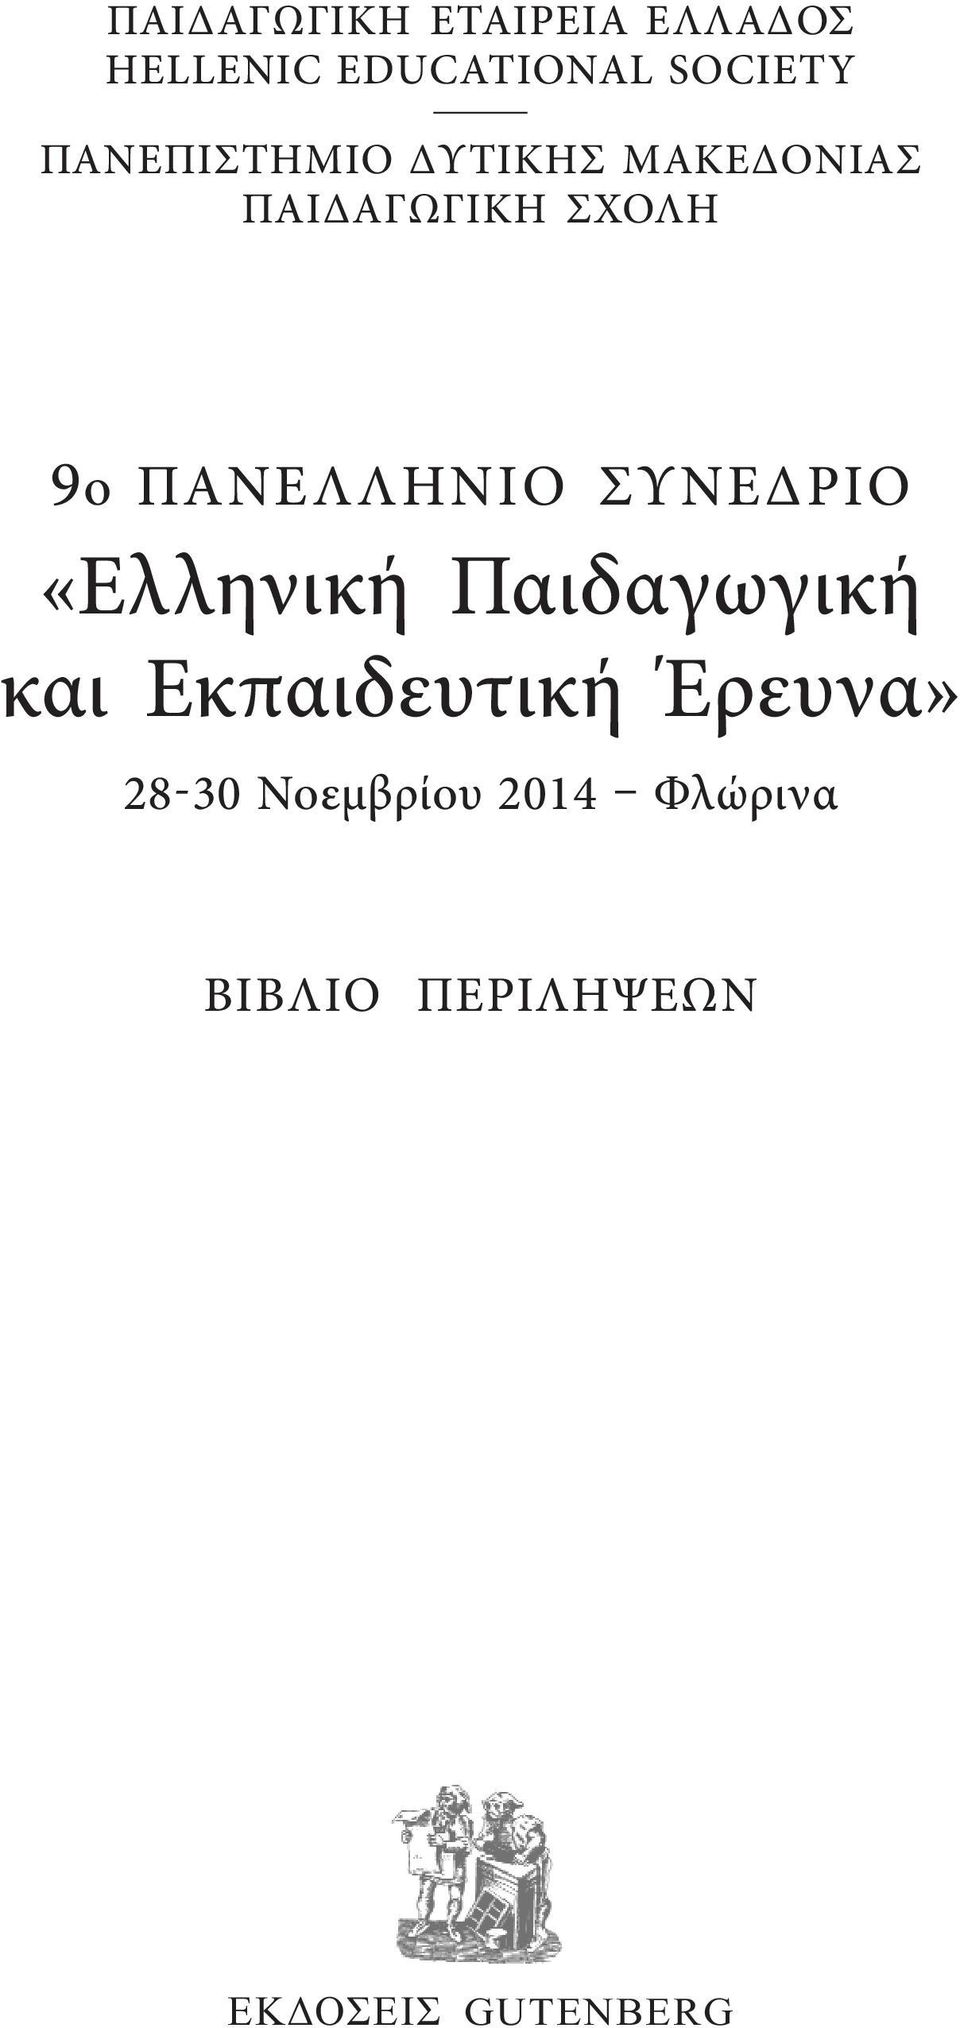 ΠΑΝΕΛΛΗΝΙΟ ΣΥΝΕΔΡΙΟ «Ελληνική Παιδαγωγική και Εκπαιδευτική